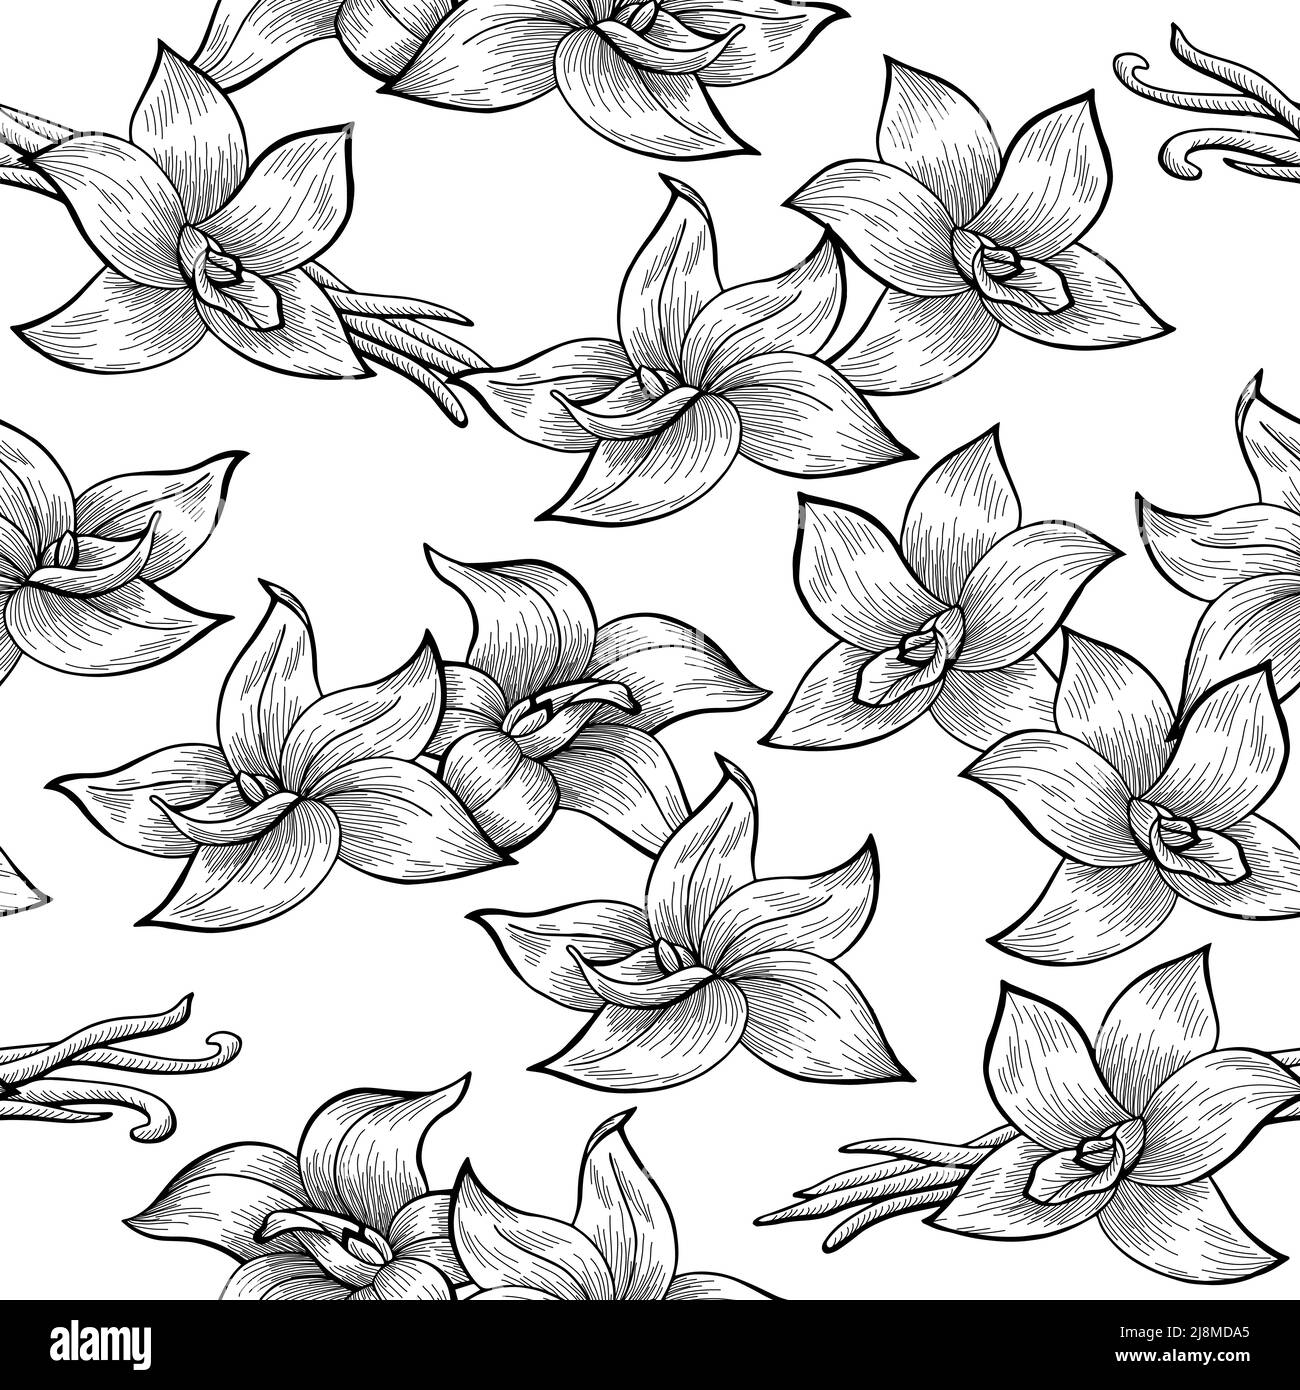 Vanille Schote Blume Grafik schwarz weiß nahtlose Muster Hintergrund Illustration Vektor Stock Vektor